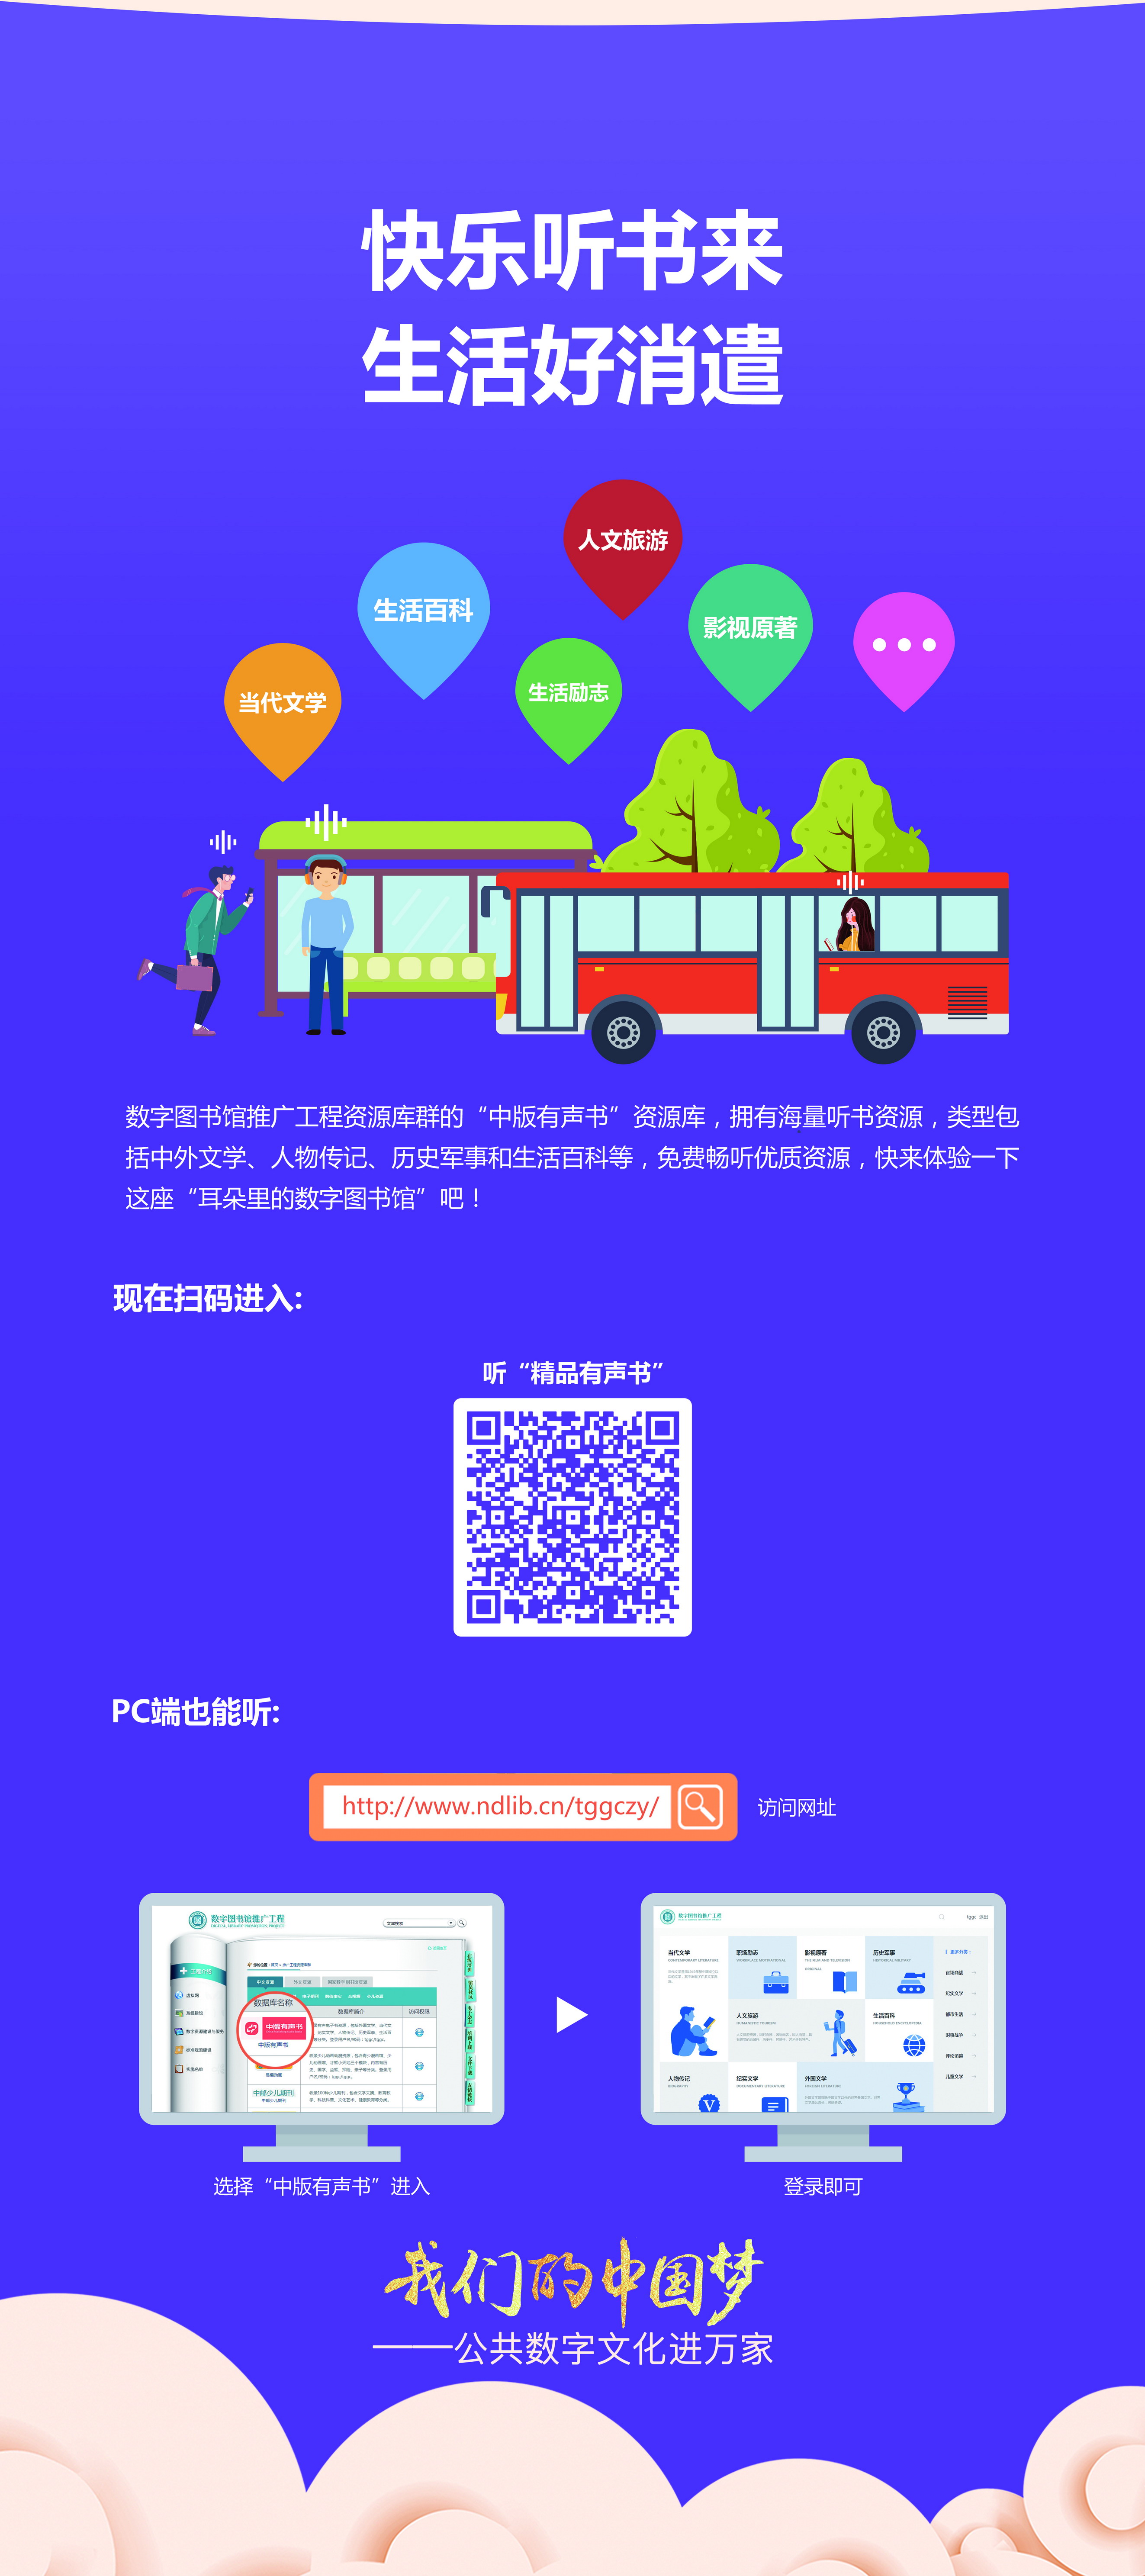 我们的中国梦——公共数字文化进万家活动线下主题展览_图4